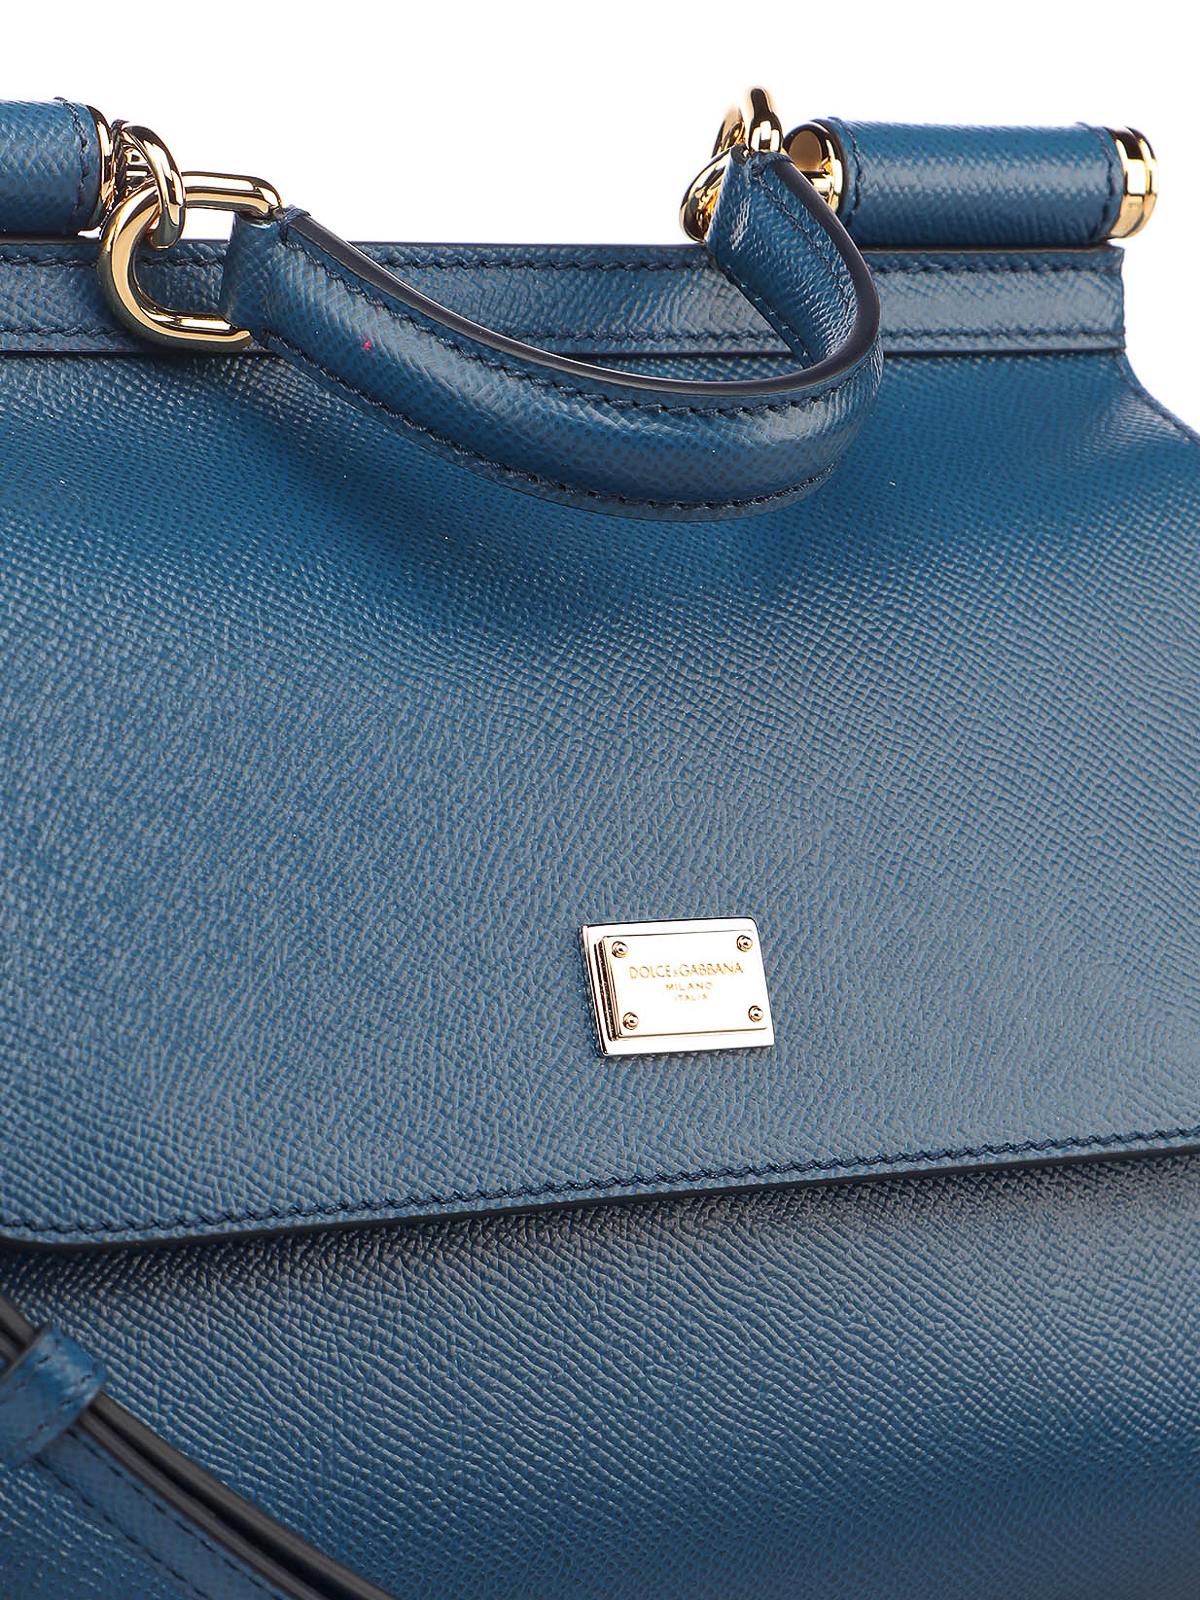 Dolce & Gabbana Sicily Embellished Denim Tote Bag in Blue